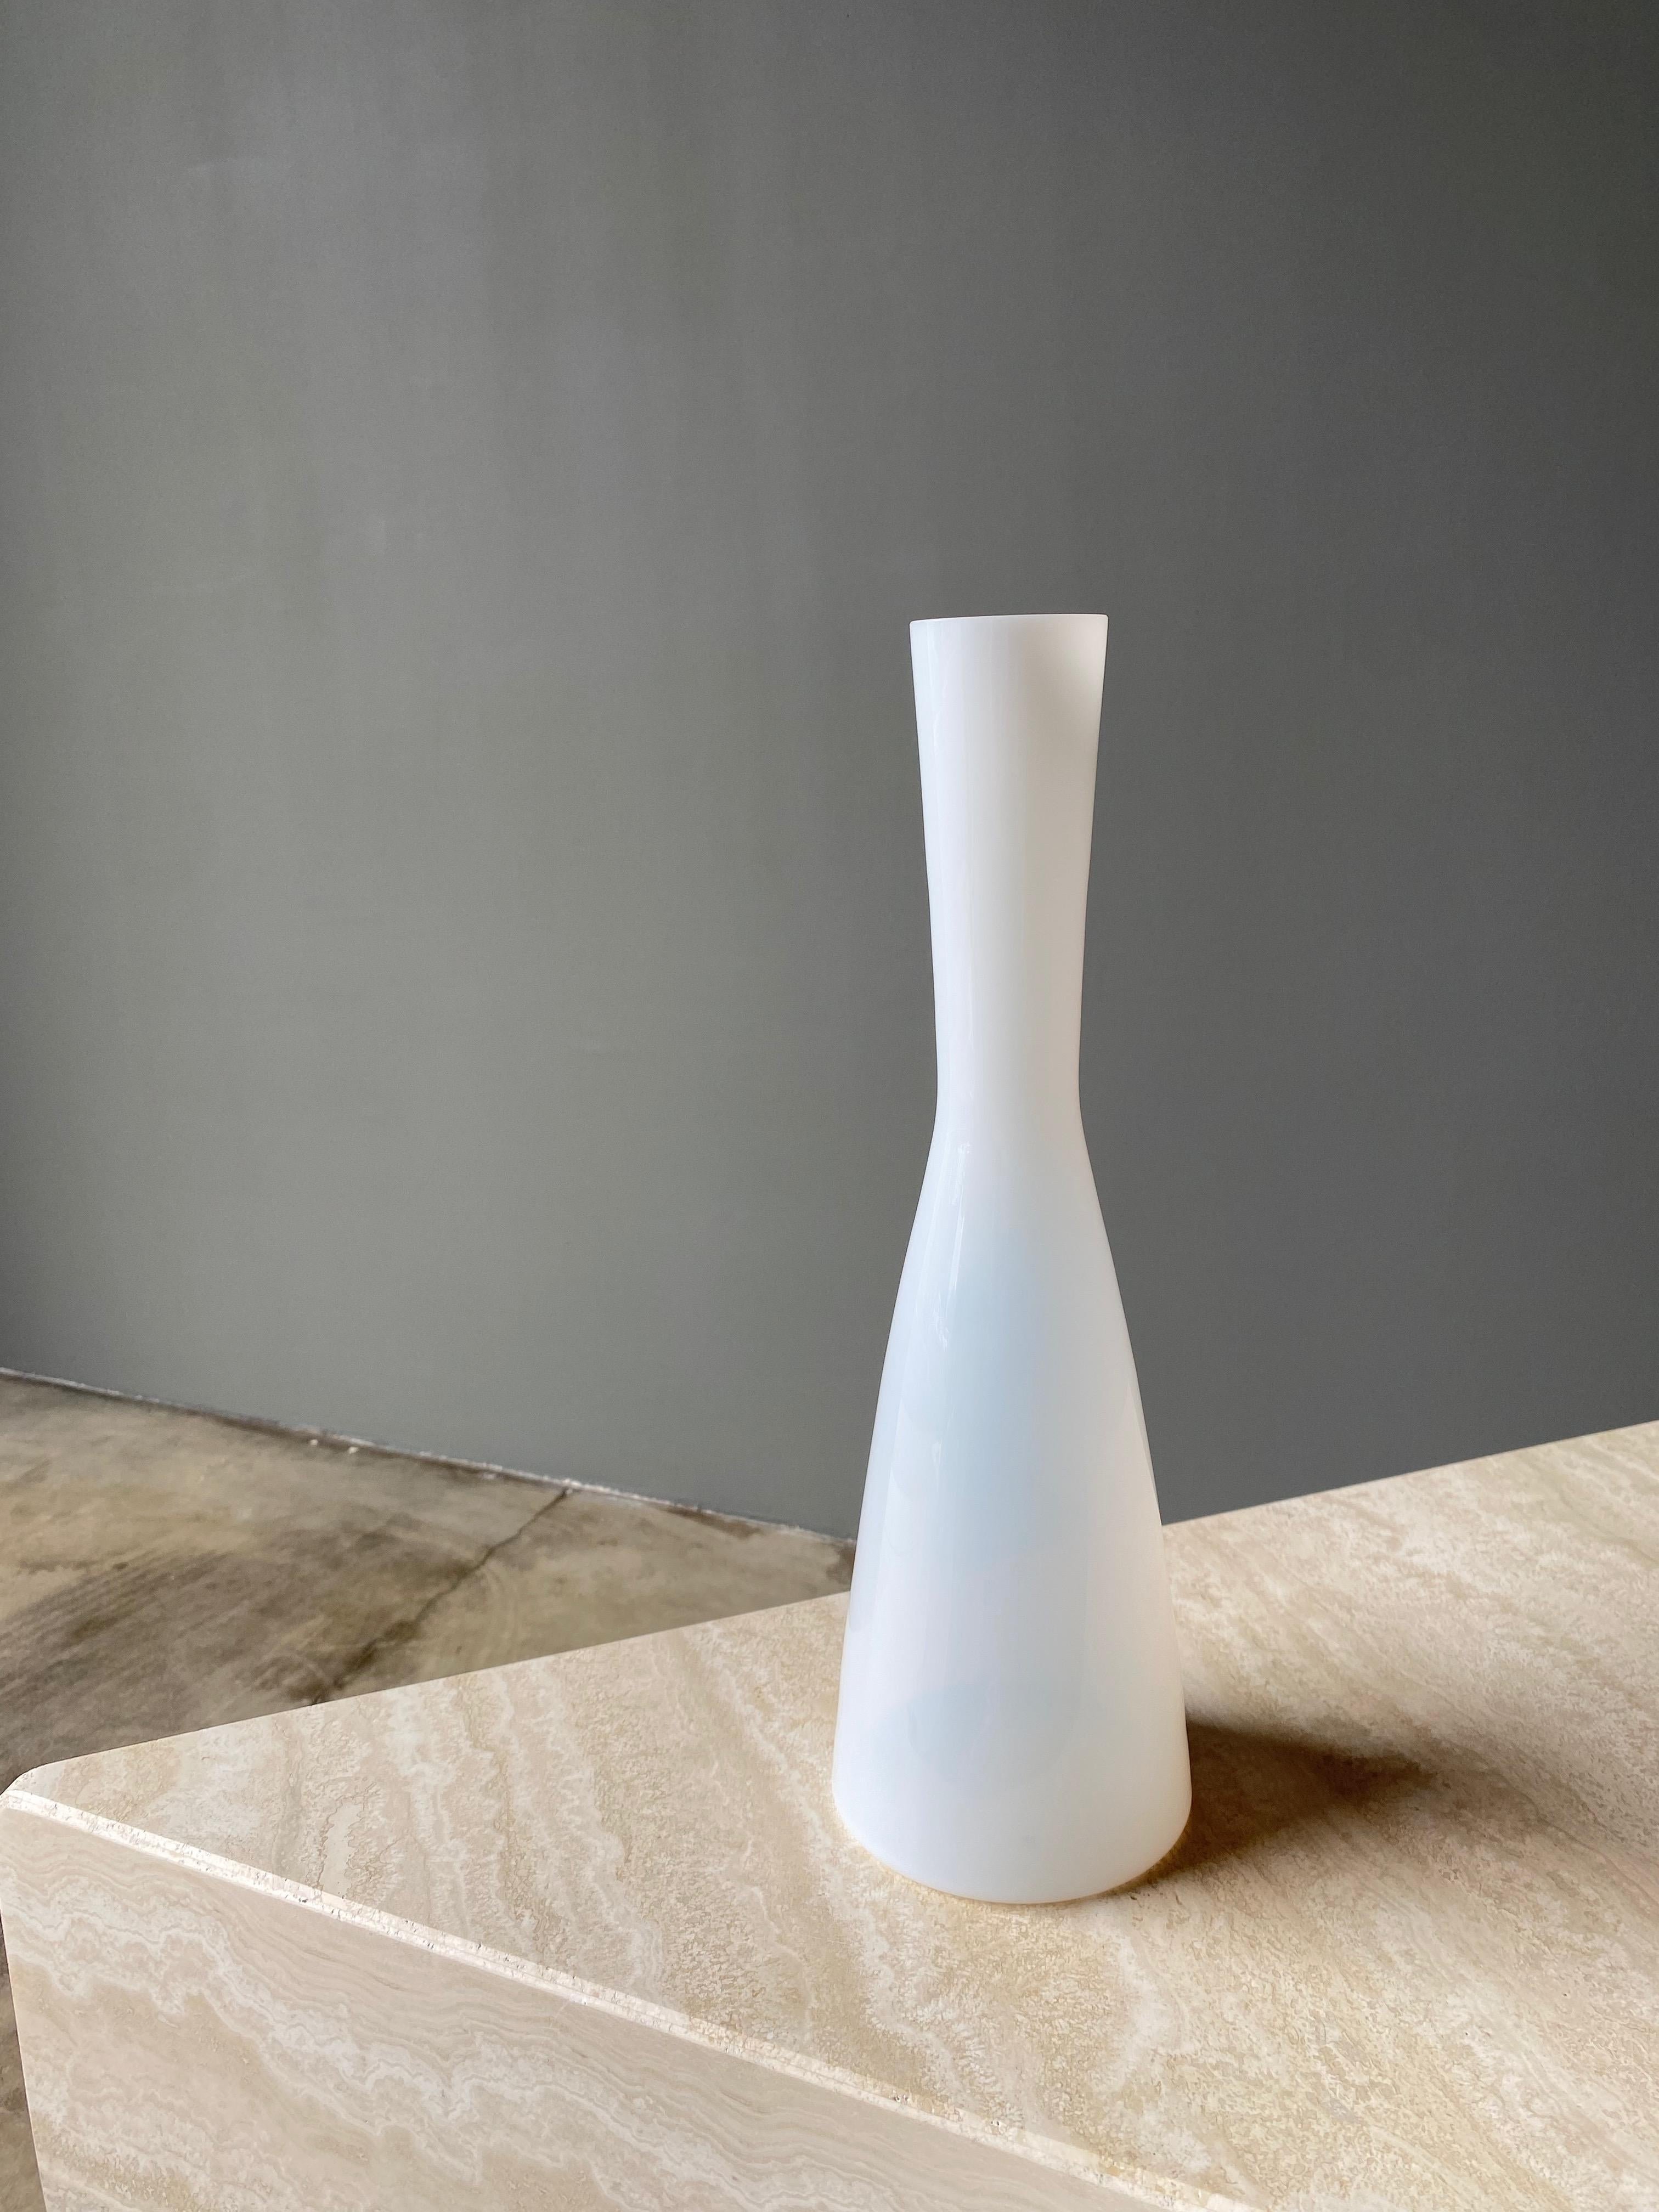 Jacob Bang White Glass Vase / Decanter for Kastrup, Denmark, 1960s.